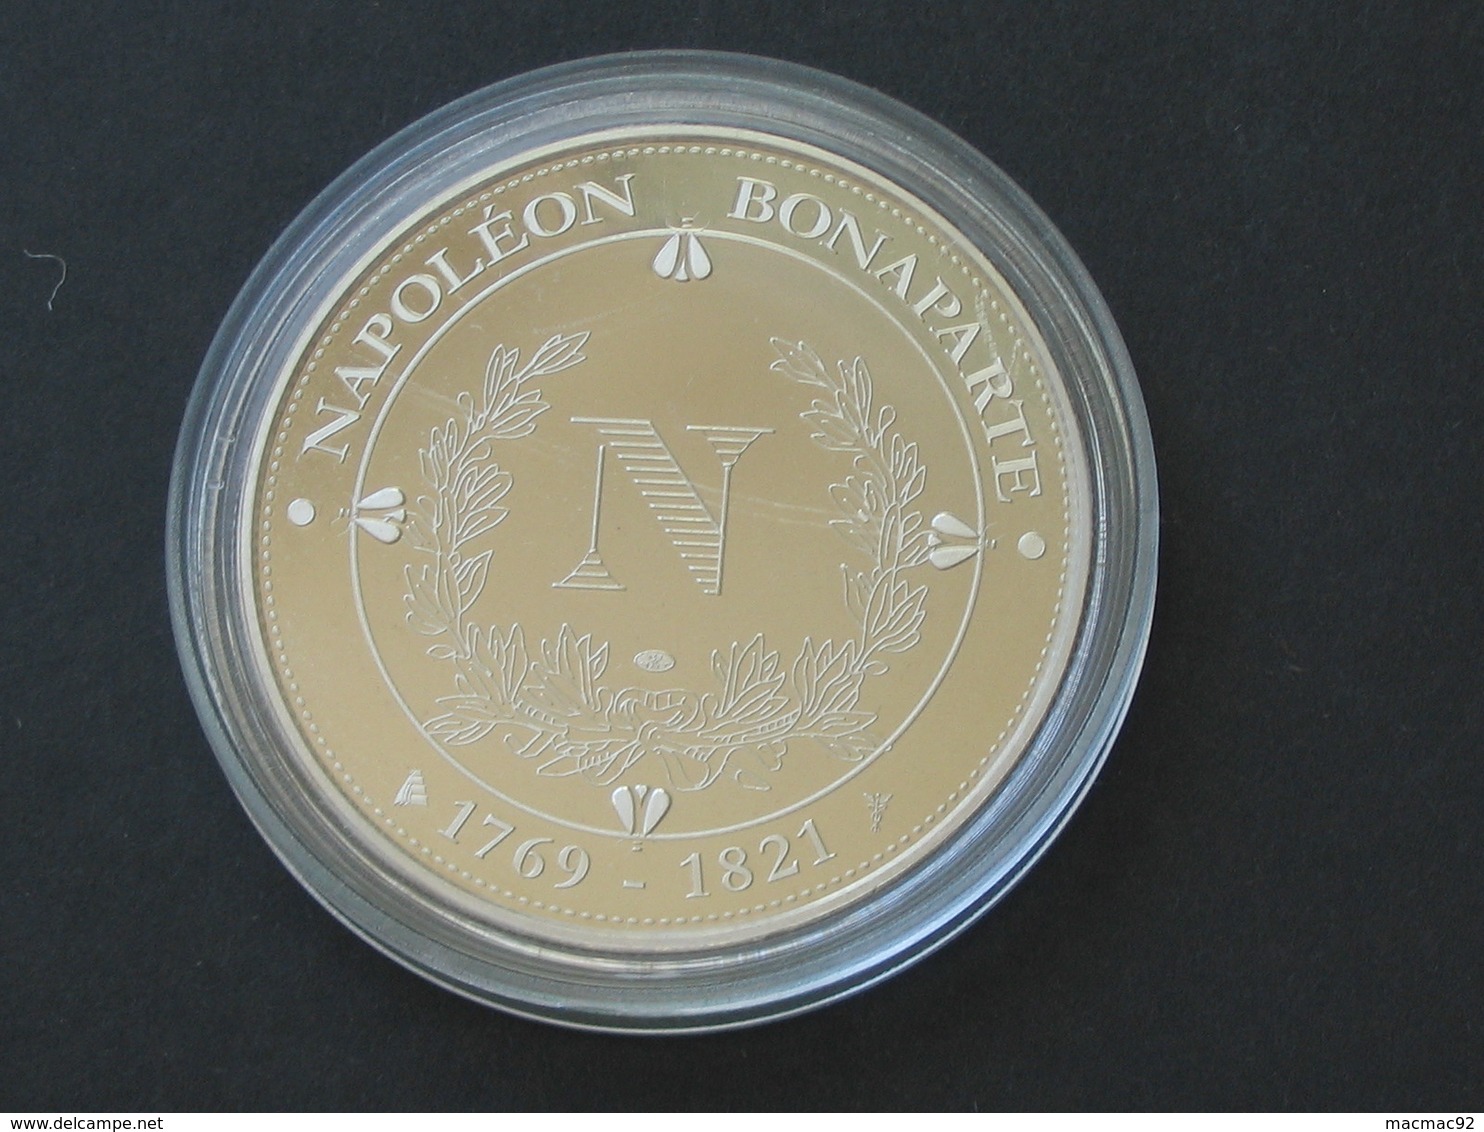 Médaille  NAPOLEON  BONAPARTE - NAPOLEONE BUONAPARTE 1769-1821  **** EN ACHAT IMMEDIAT **** - Royaux / De Noblesse